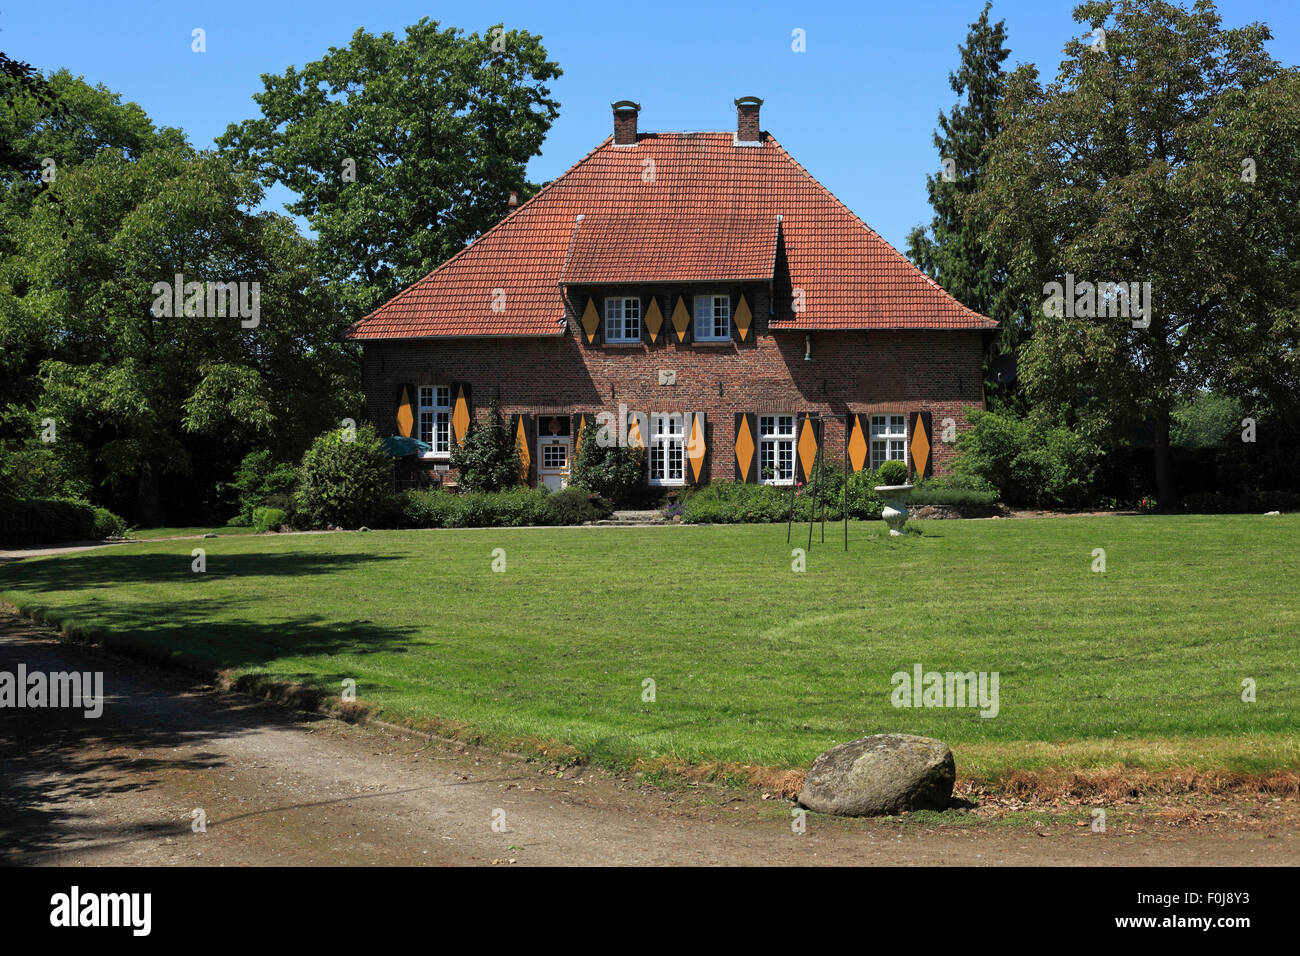 Wasserschloss Haus Kretier in Rhede-Vardingholt, Münsterland, Nordrhein-Westfalen, erstellte Darm Hillerding Stockfoto